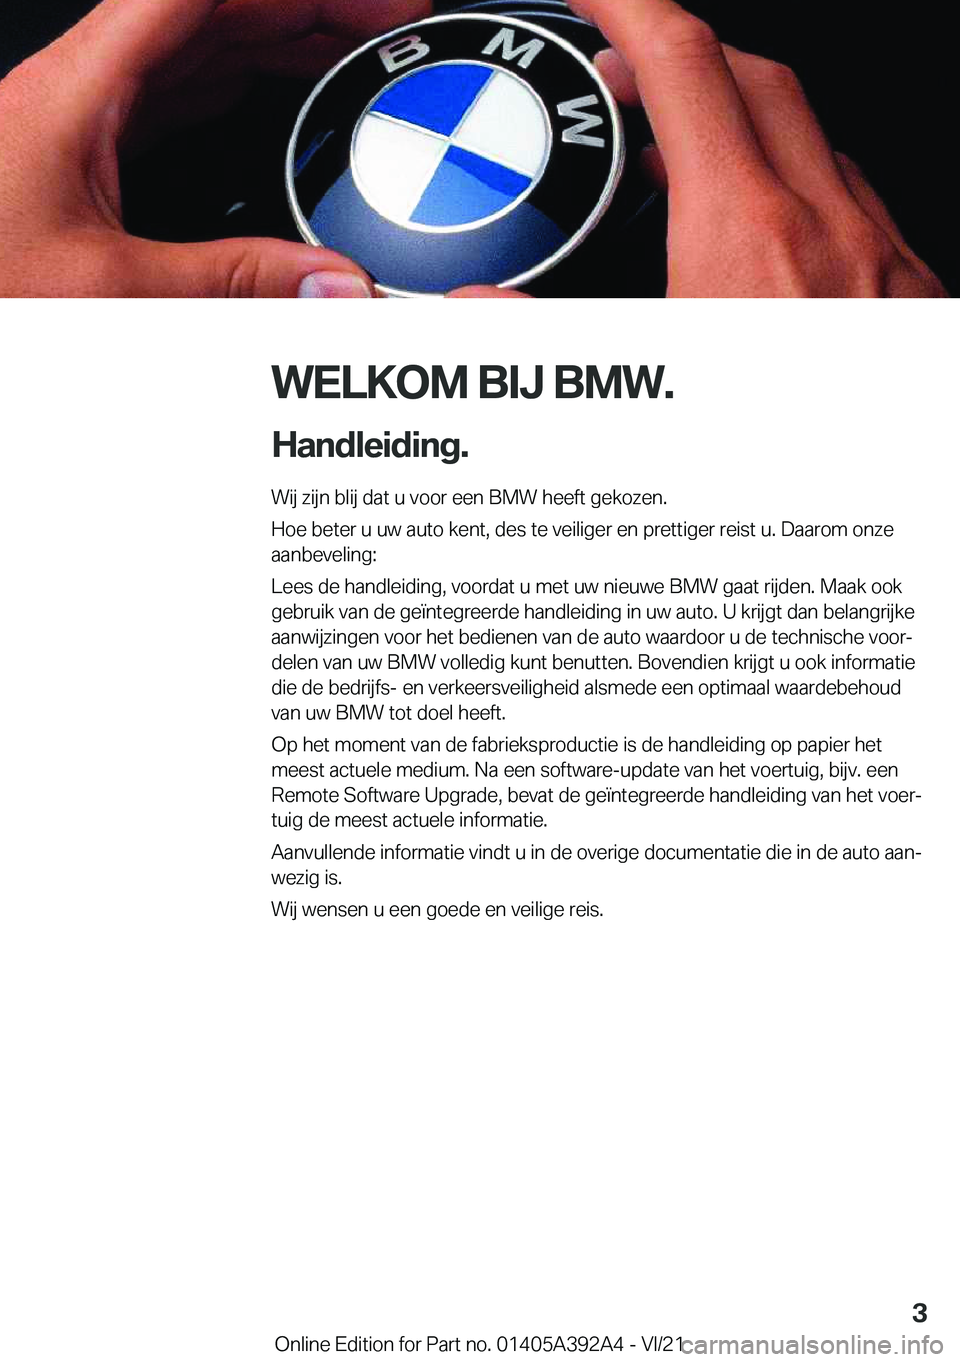 BMW 4 SERIES 2022  Instructieboekjes (in Dutch) �W�E�L�K�O�M��B�I�J��B�M�W�.
�H�a�n�d�l�e�i�d�i�n�g�. �W�i�j��z�i�j�n��b�l�i�j��d�a�t��u��v�o�o�r��e�e�n��B�M�W��h�e�e�f�t��g�e�k�o�z�e�n�.
�H�o�e��b�e�t�e�r��u��u�w��a�u�t�o��k�e�n�t�